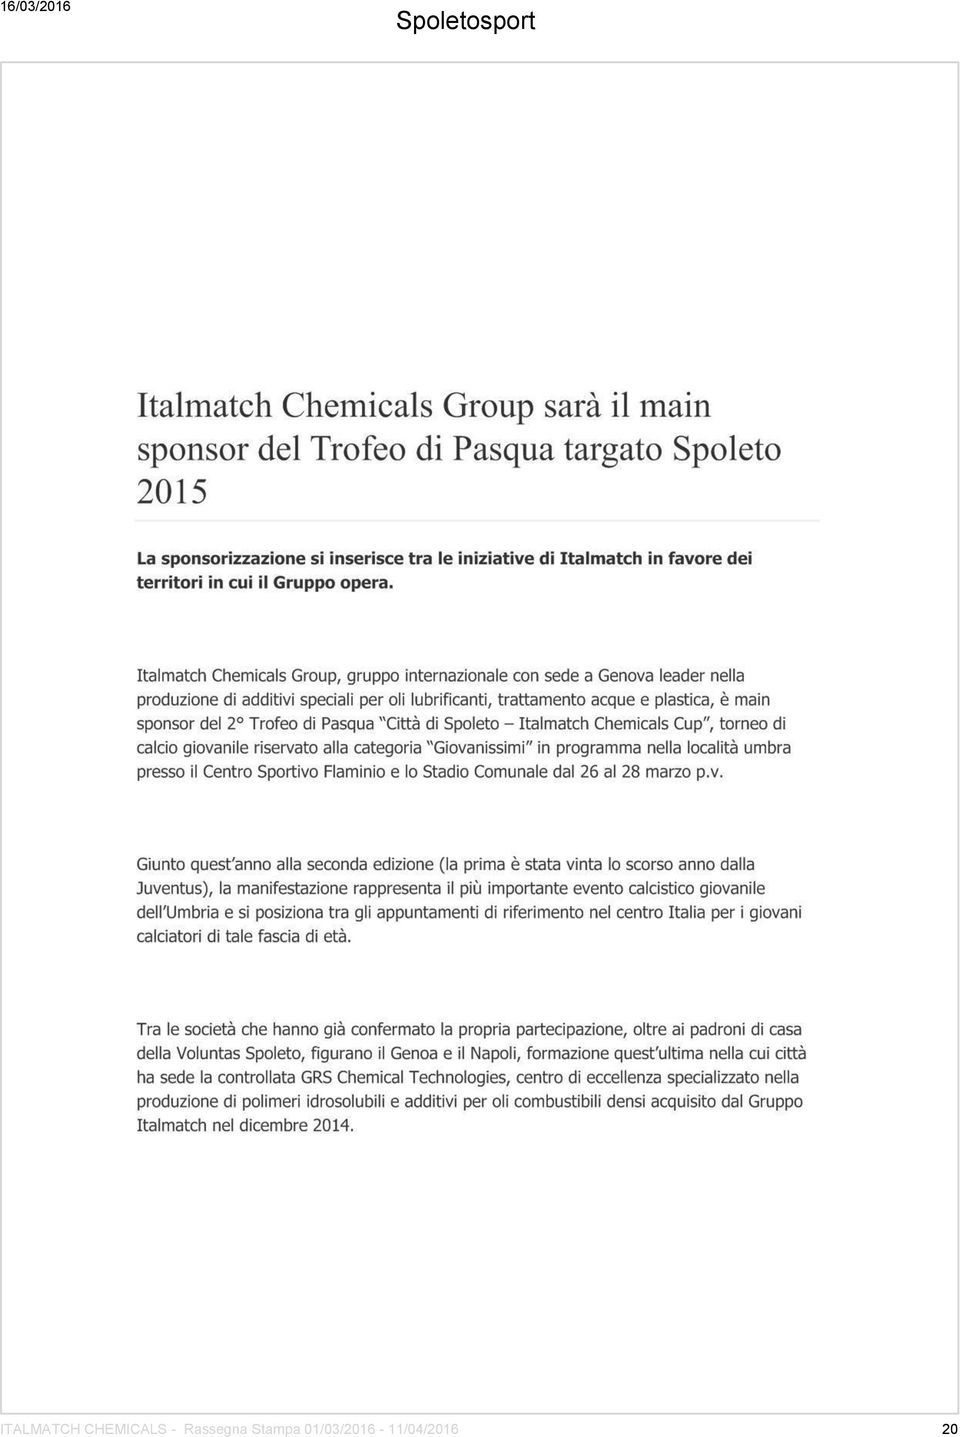 ITALMATCH CHEMICALS -